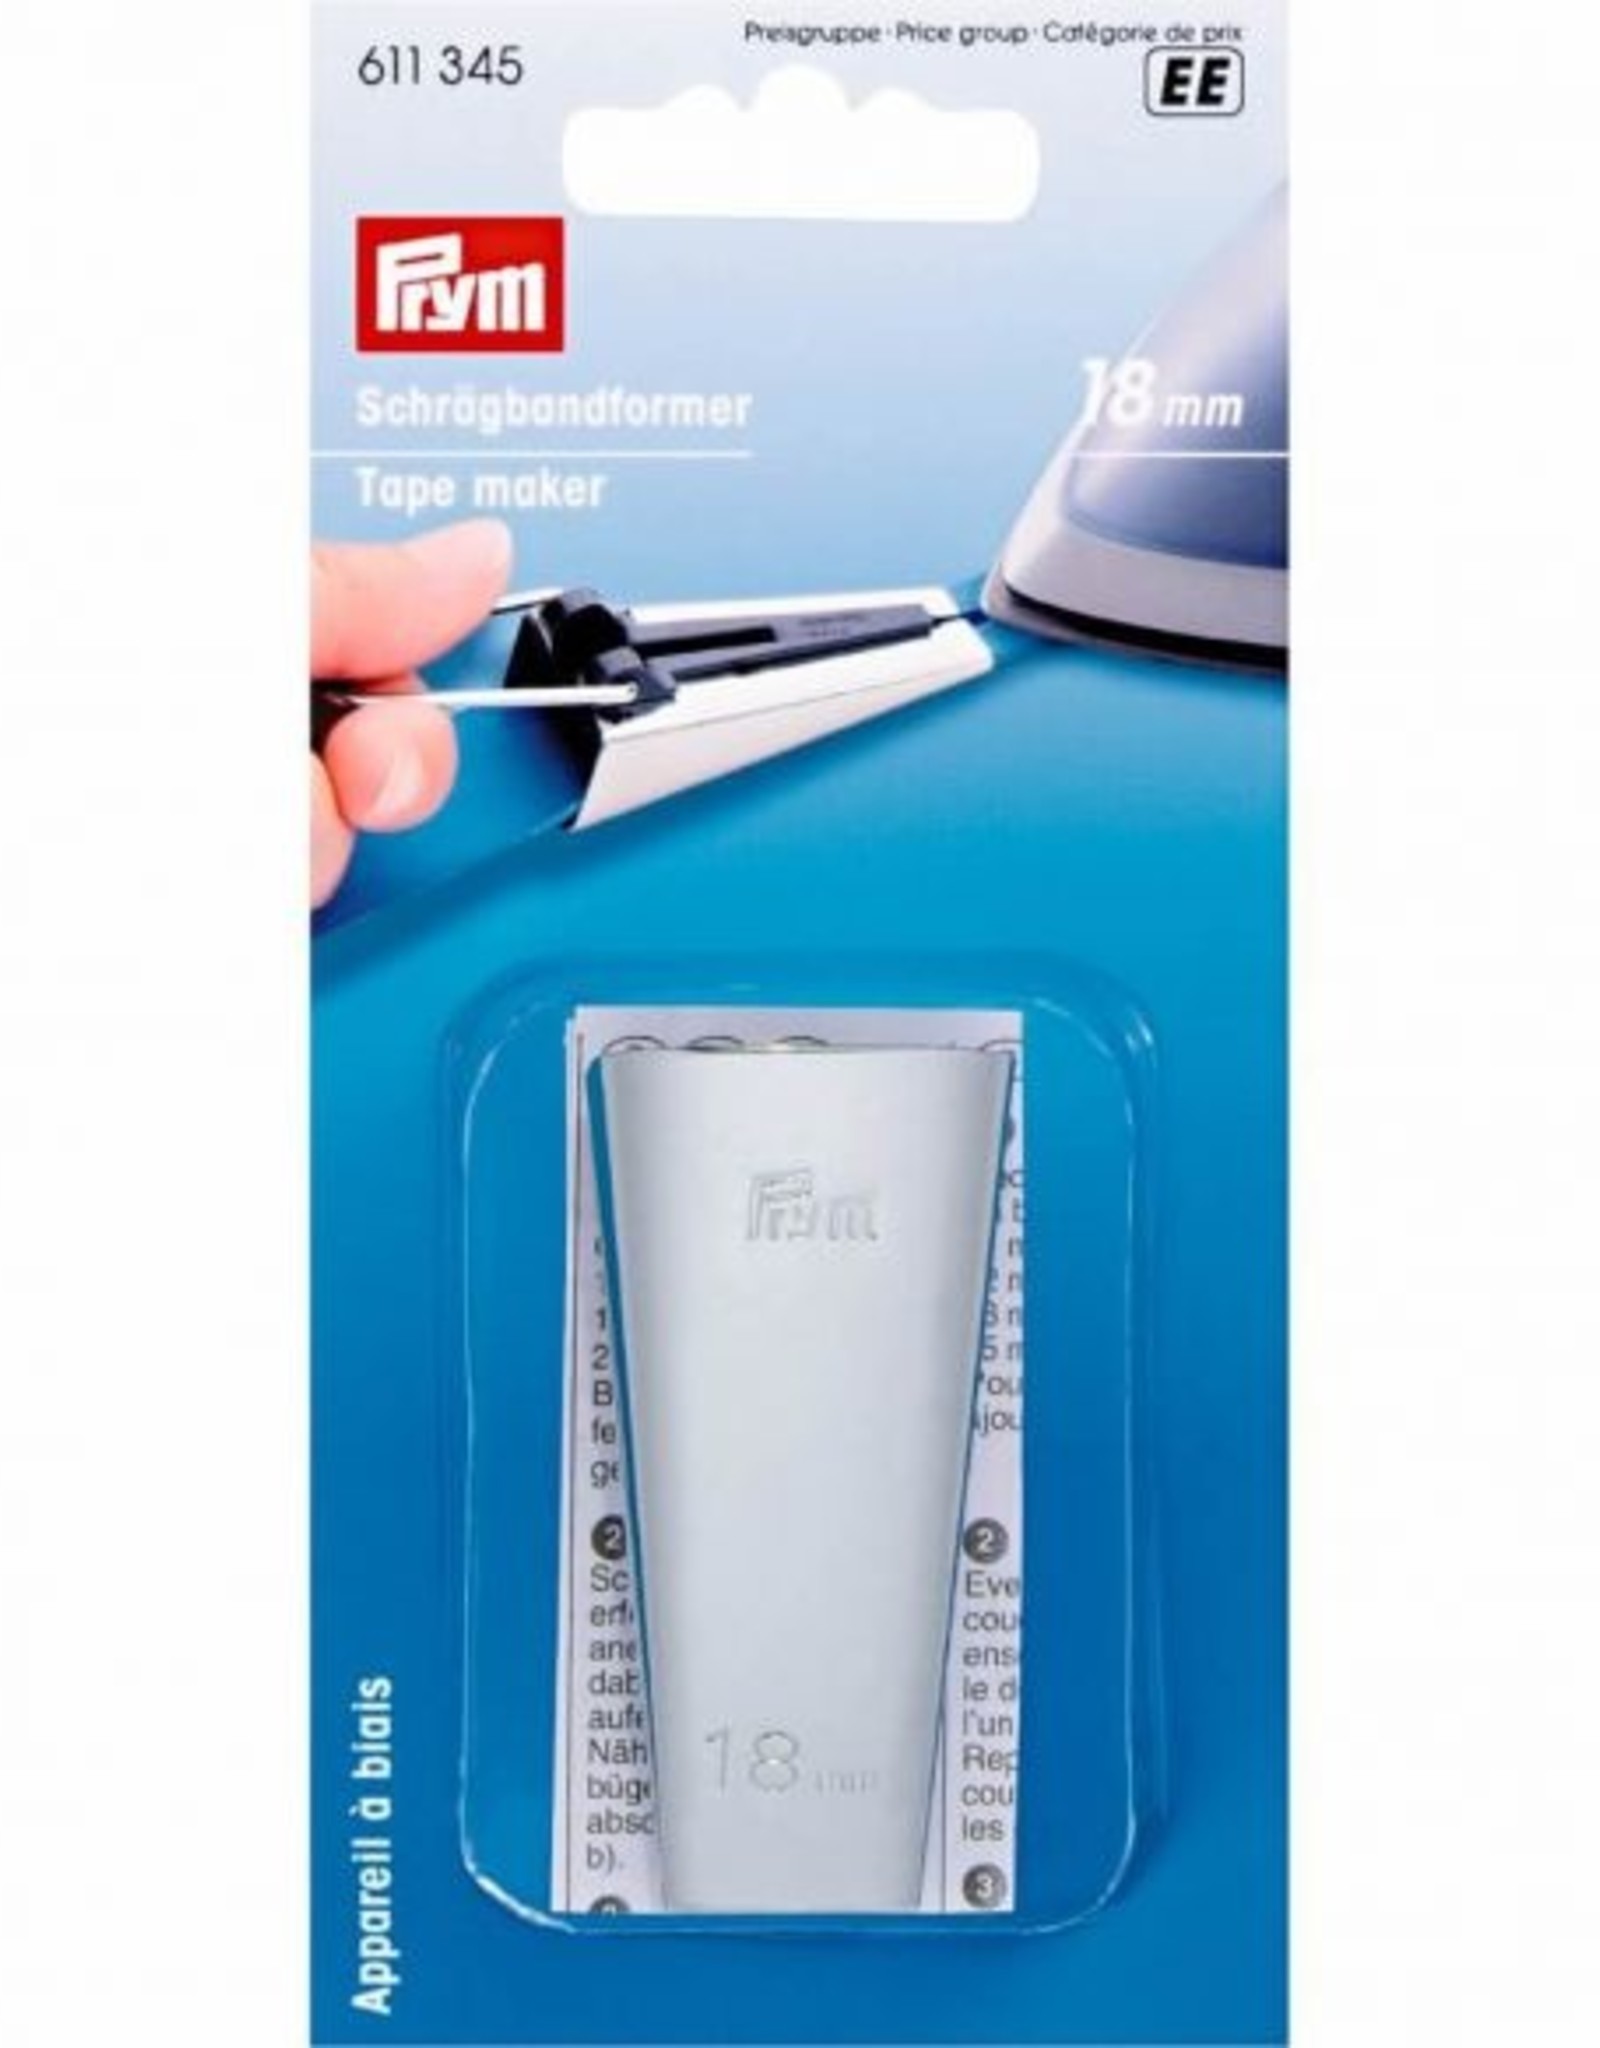 Prym Prym - biaisbandvormer 18mm - 611 345